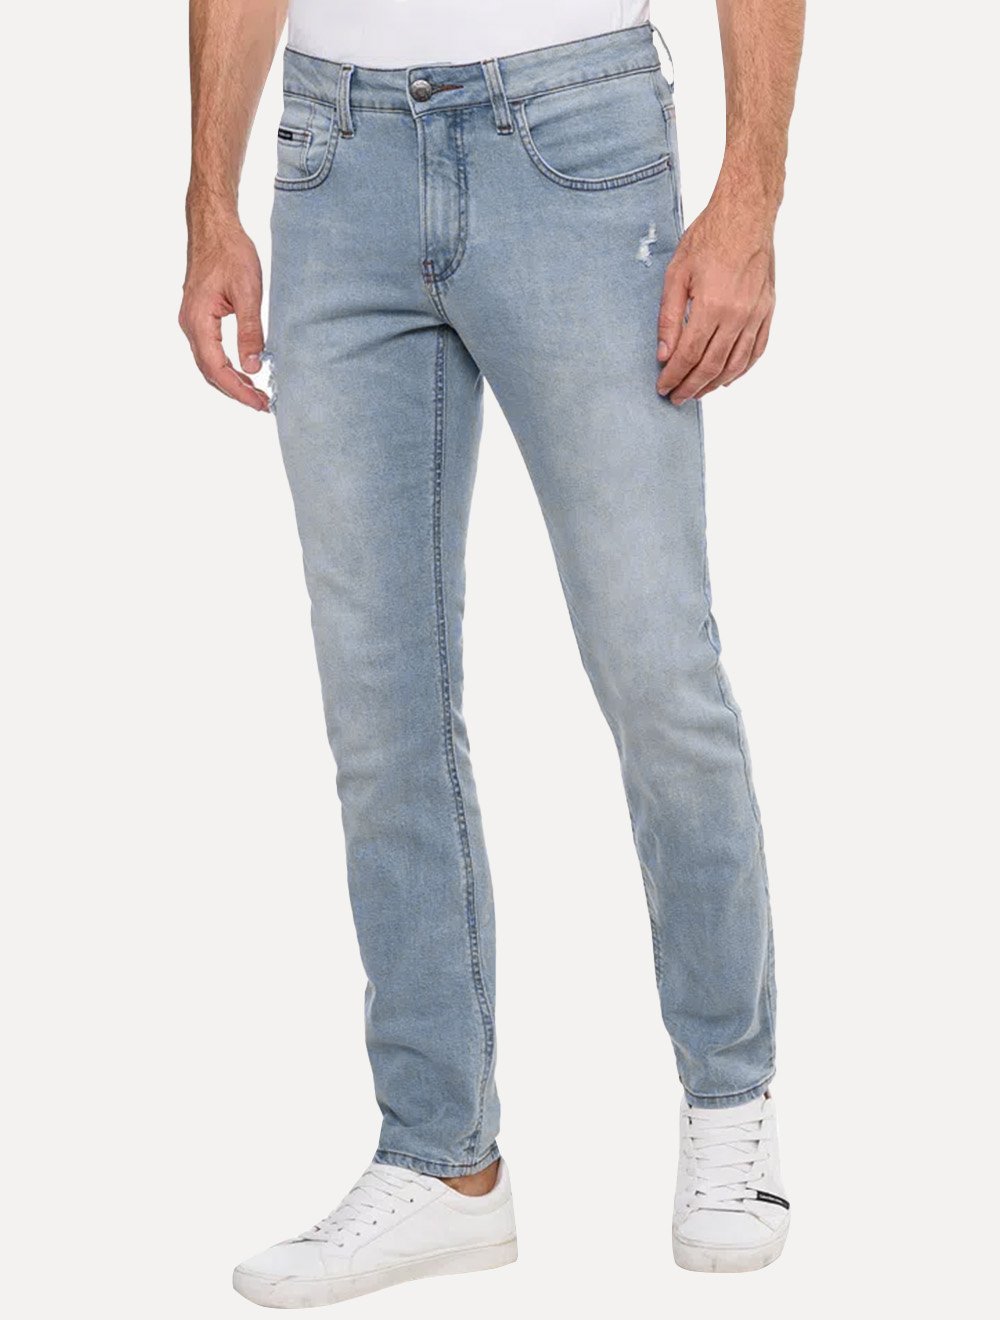 Calvin Klein Jeans HIGH RISE SHORT Azul / Claro - Entrega gratuita